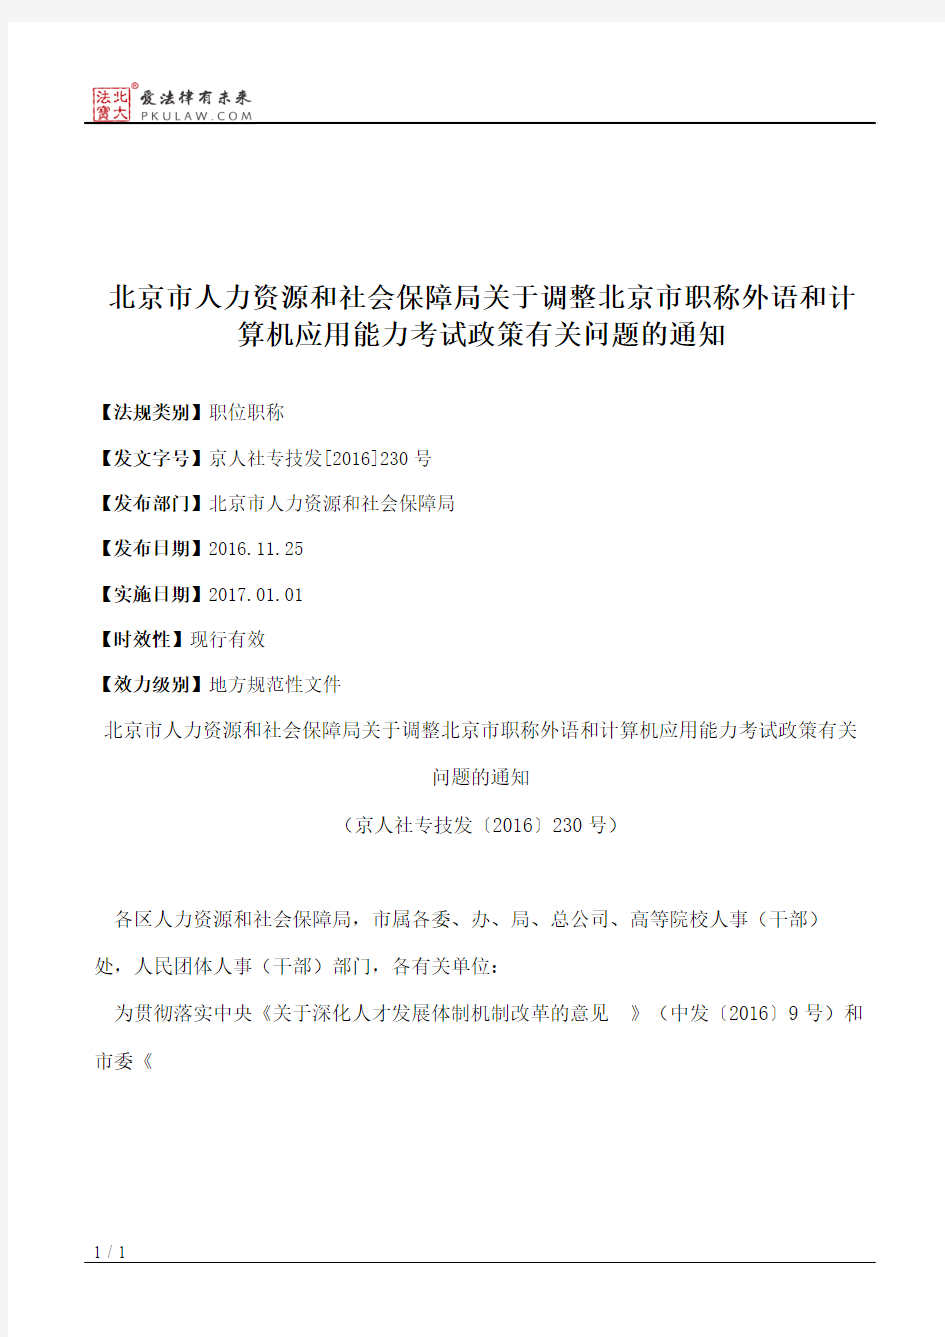 北京市人力资源和社会保障局关于调整北京市职称外语和计算机应用